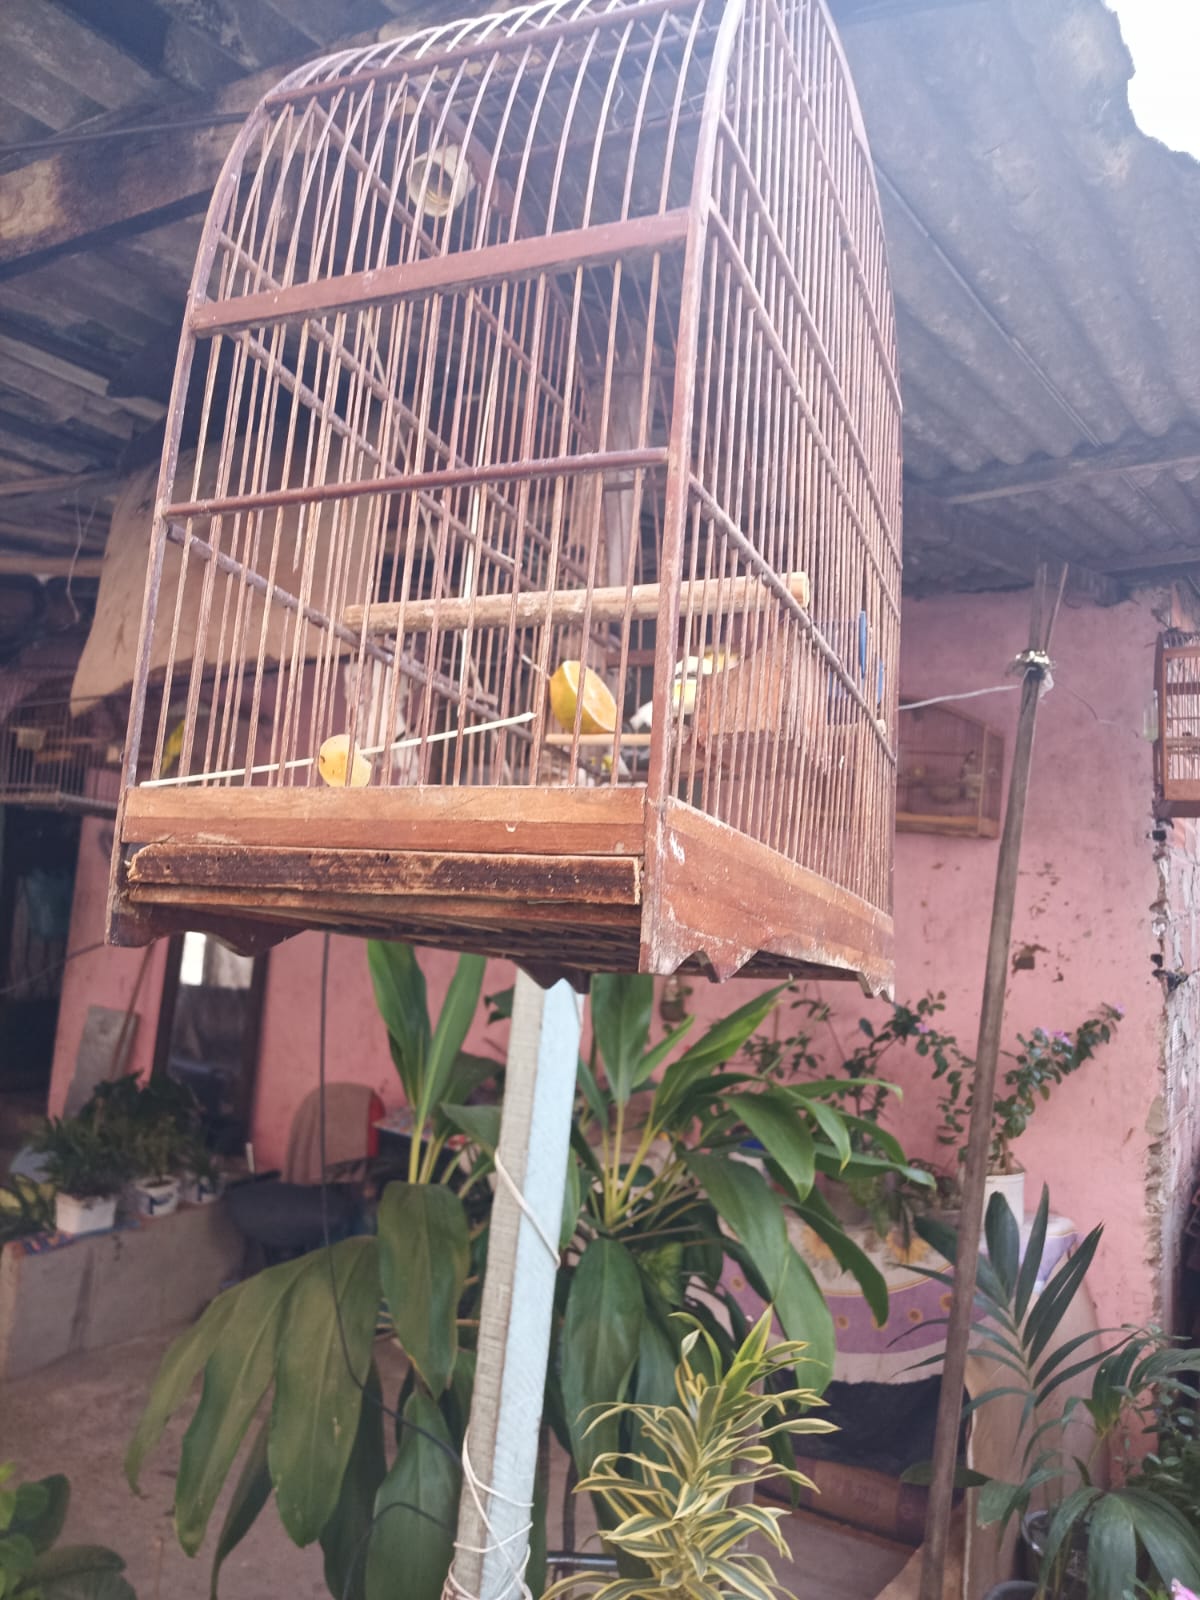 Pássaros silvestres são apreendidos em São Gonçalo após denúncia 